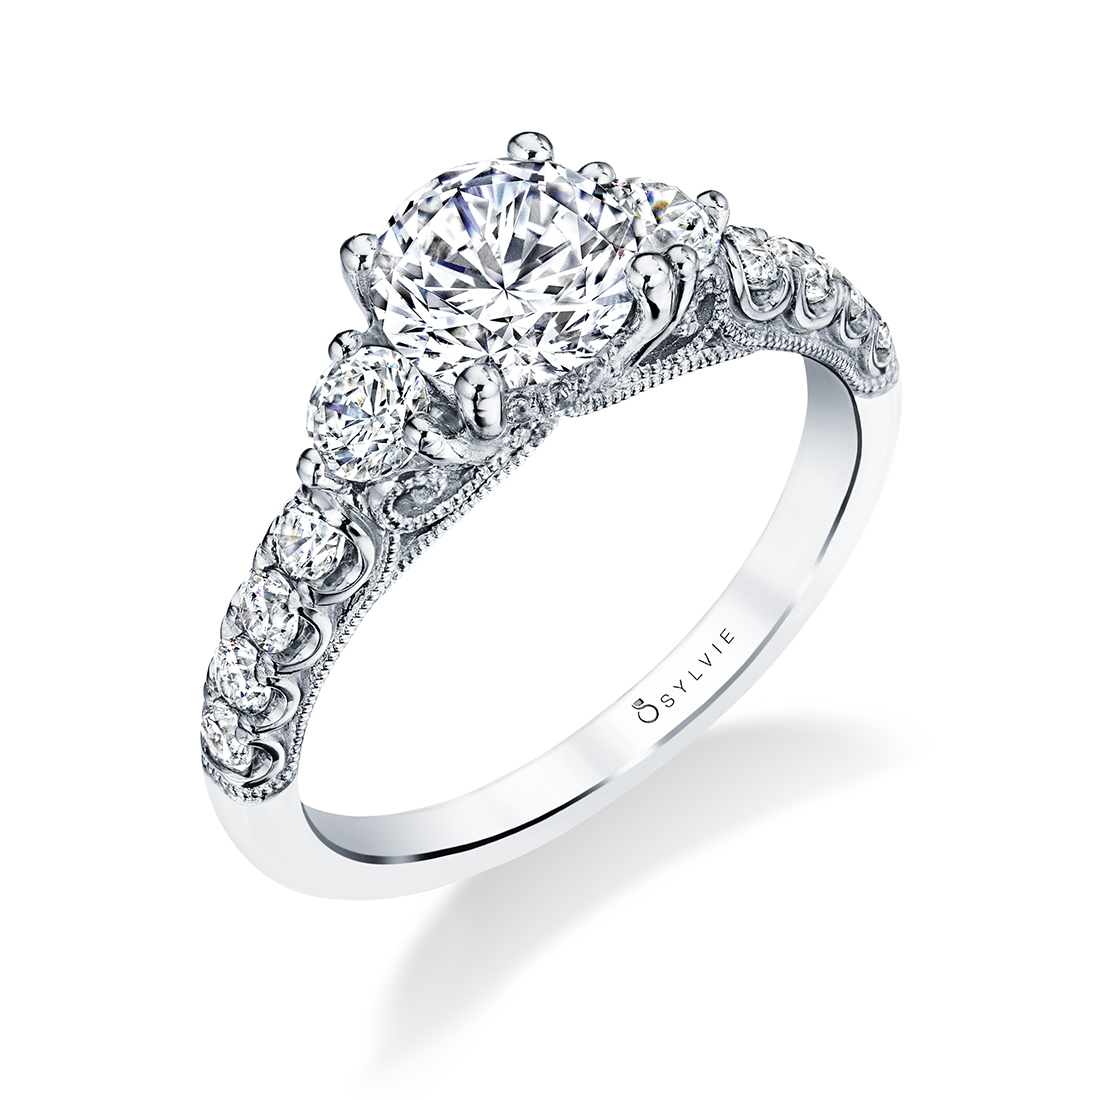 Three stone engagement ring with round diamonds in white gold - Lara